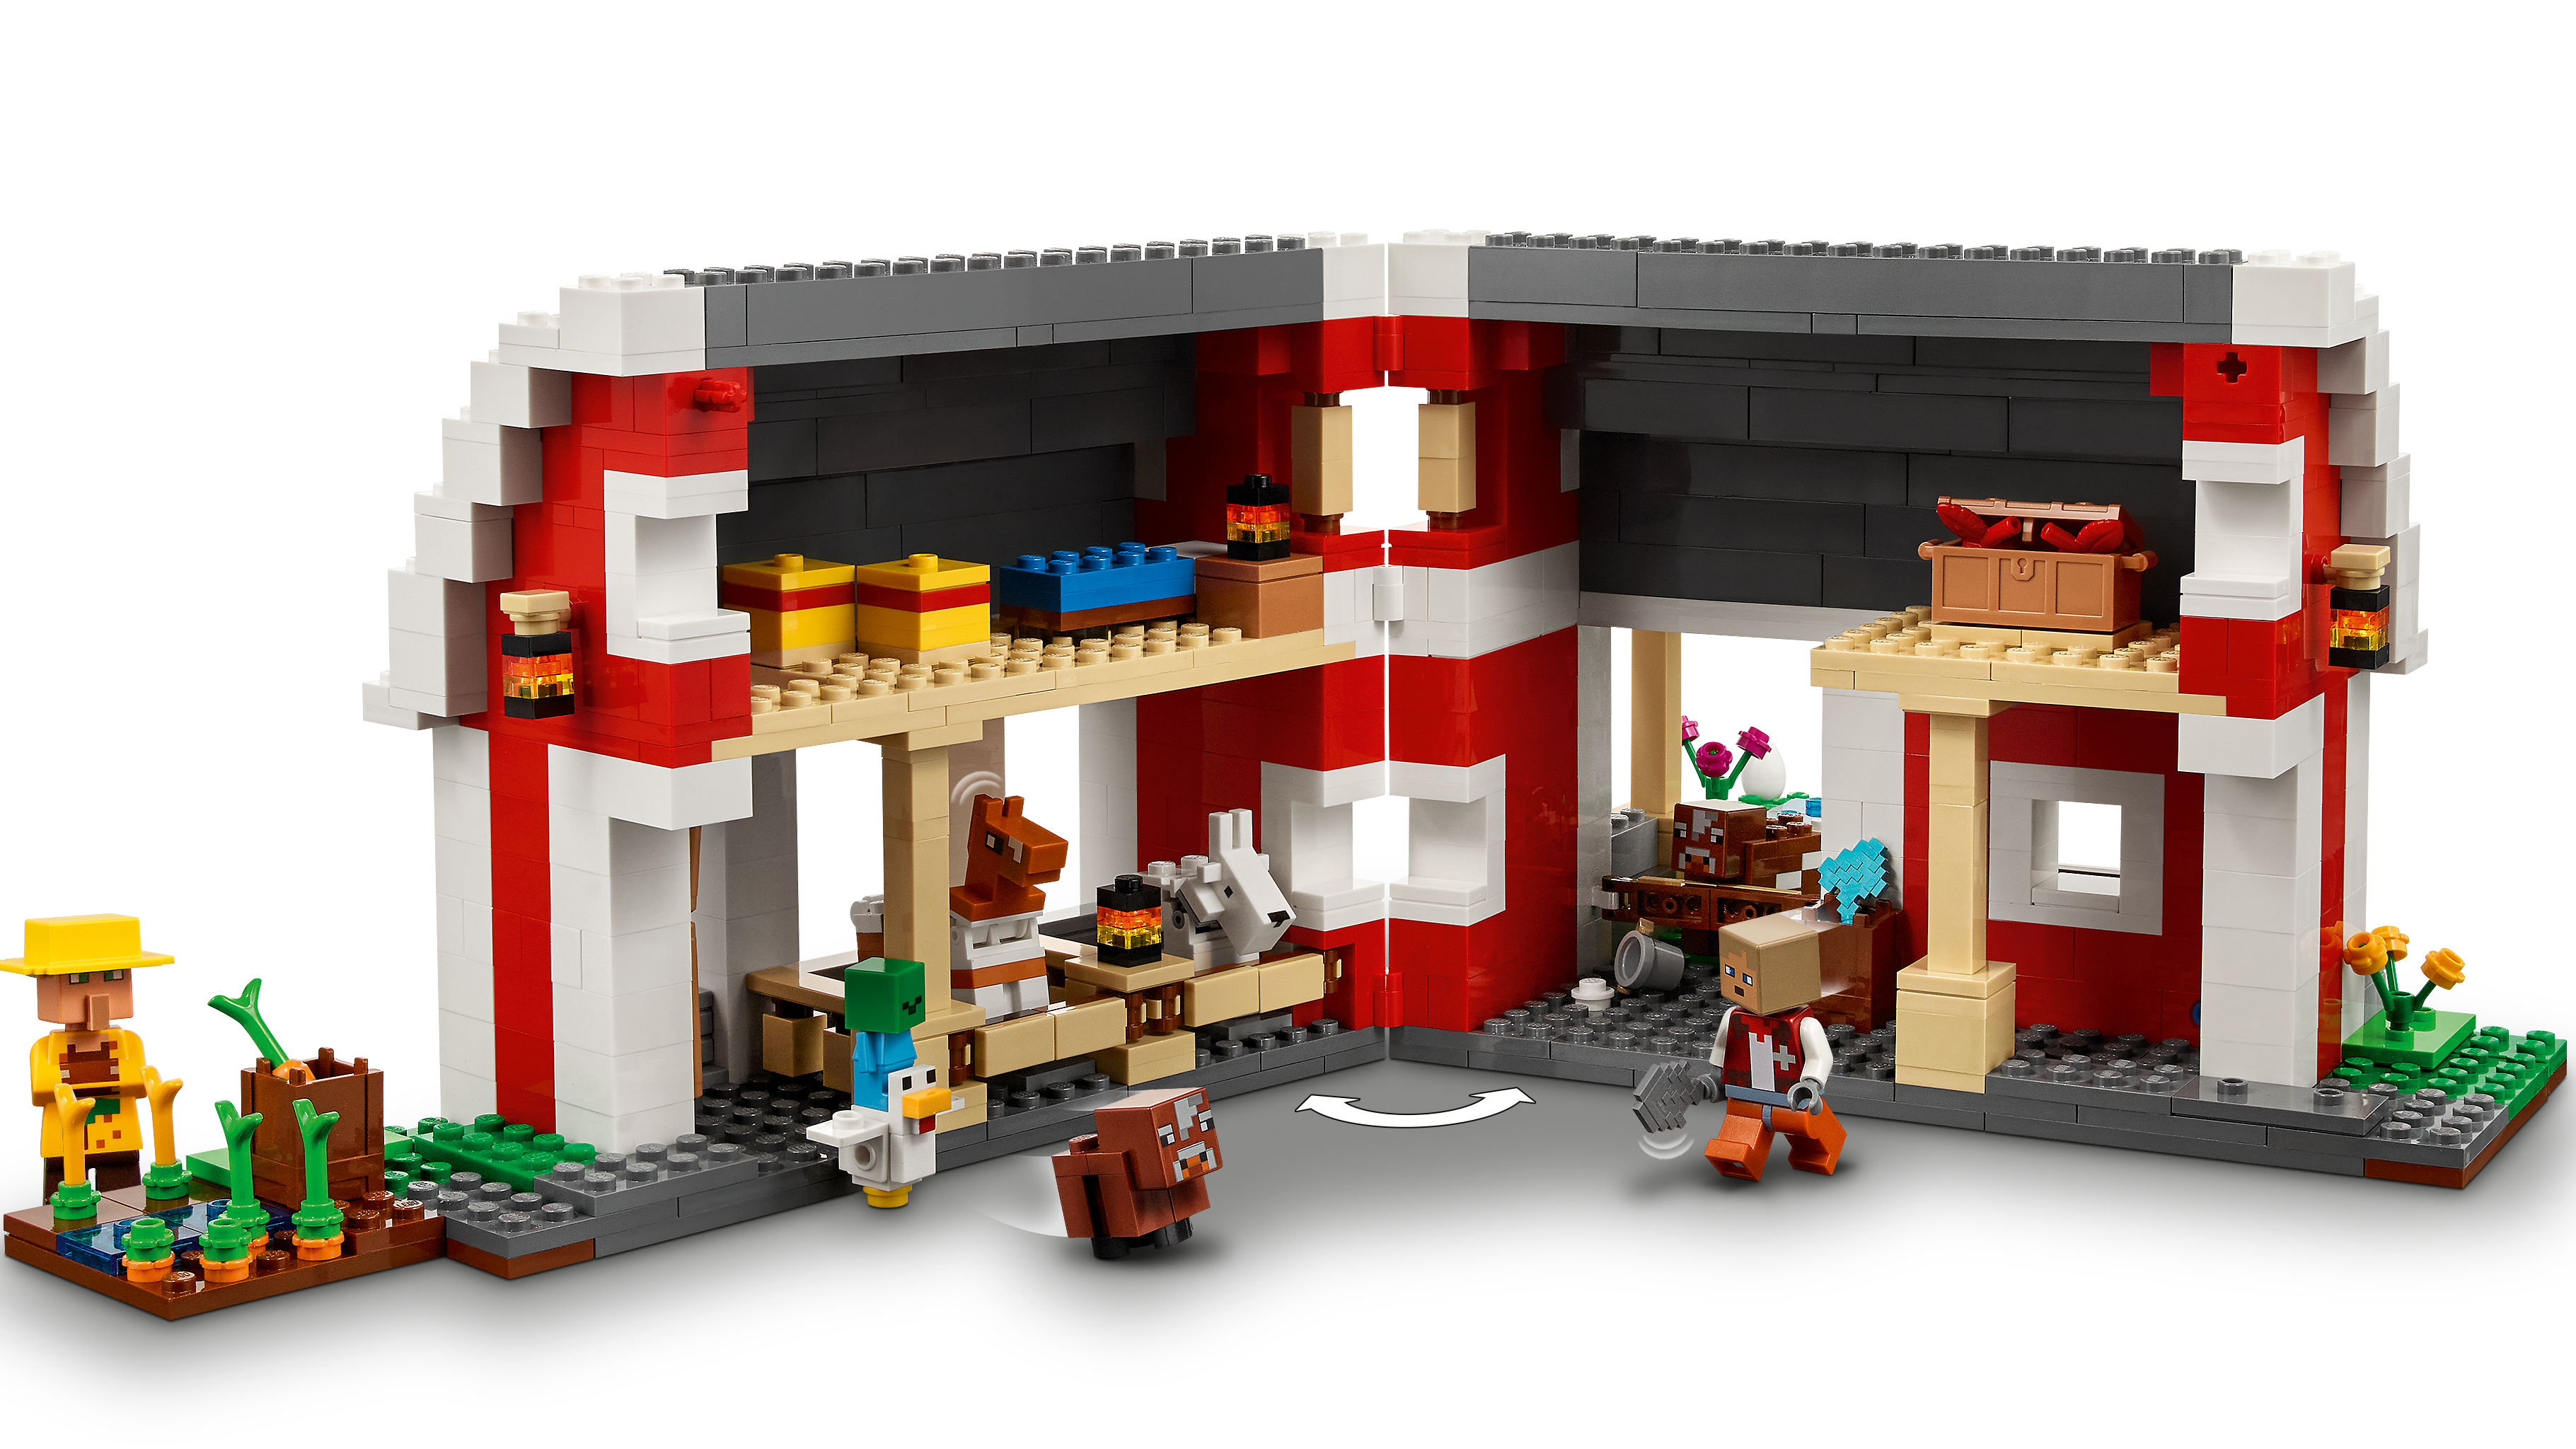 LEGO - Casa de construção Minecraft com baú do tesouro e bioma do